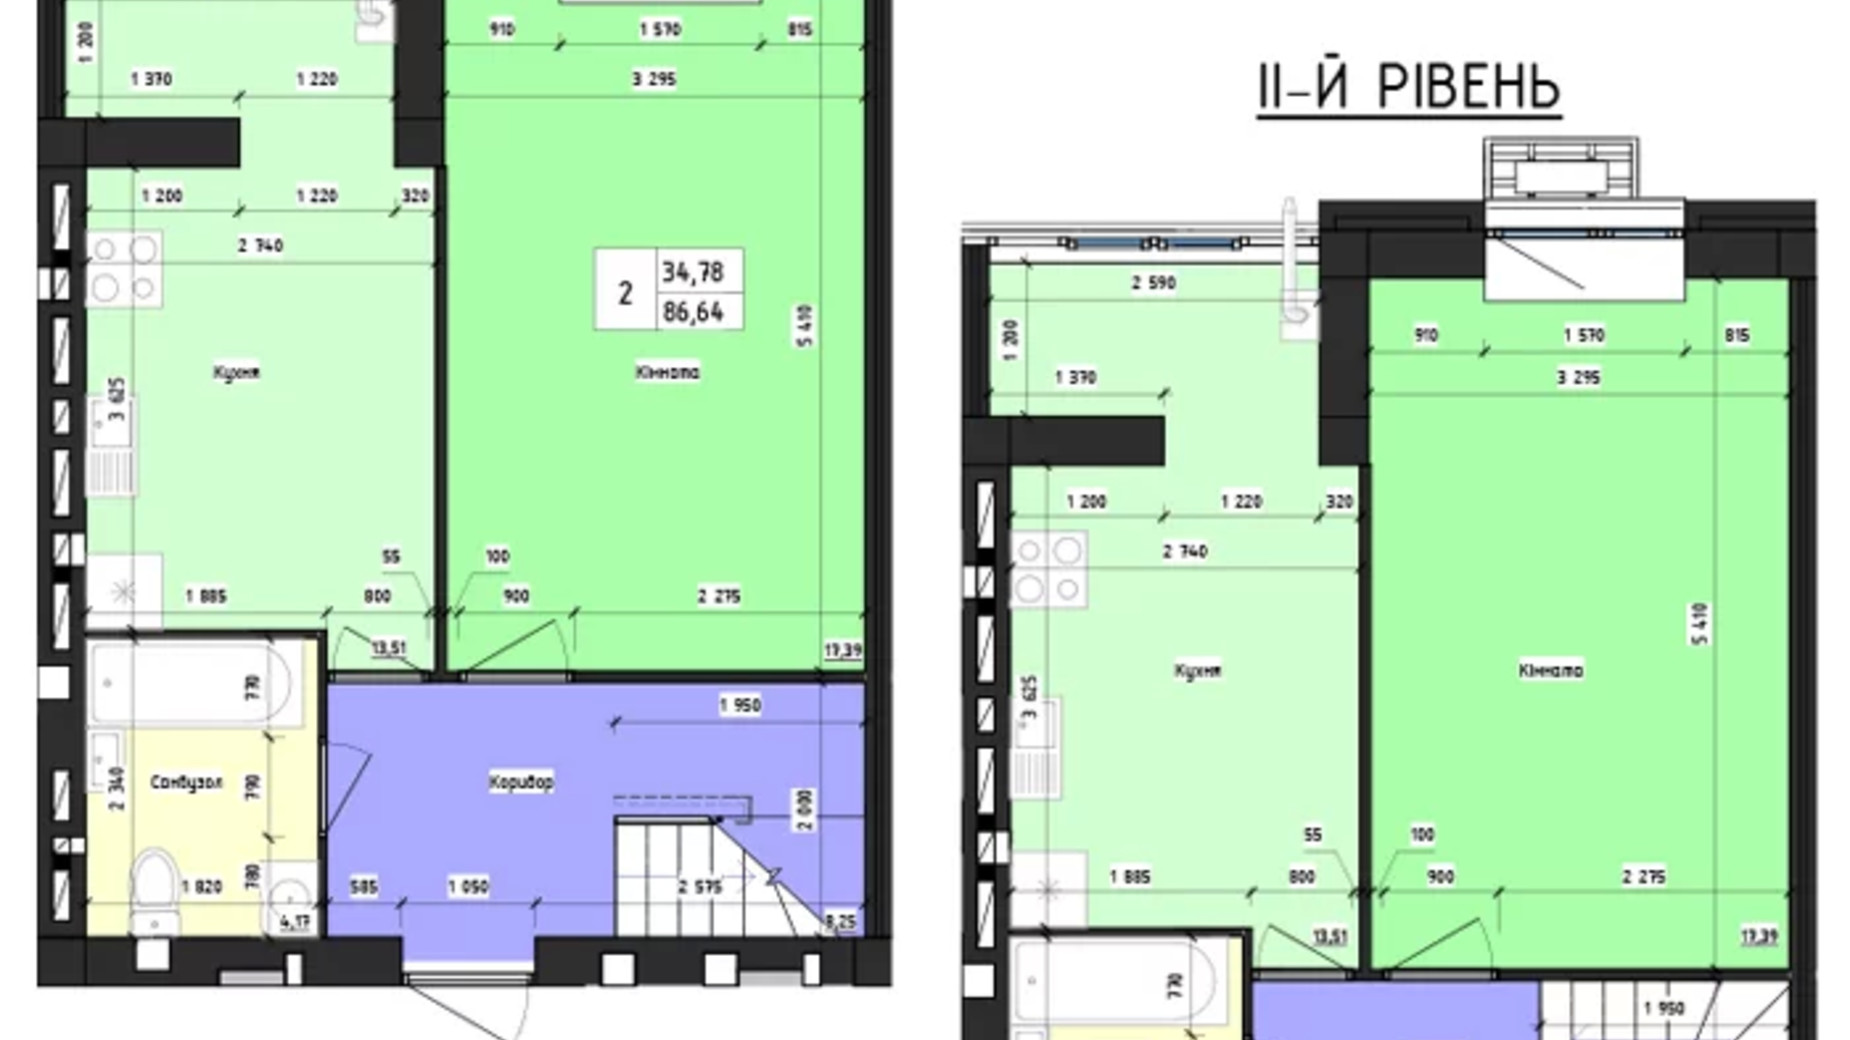 Планировка много­уровневой квартиры в ЖК Парус 86.64 м², фото 618884